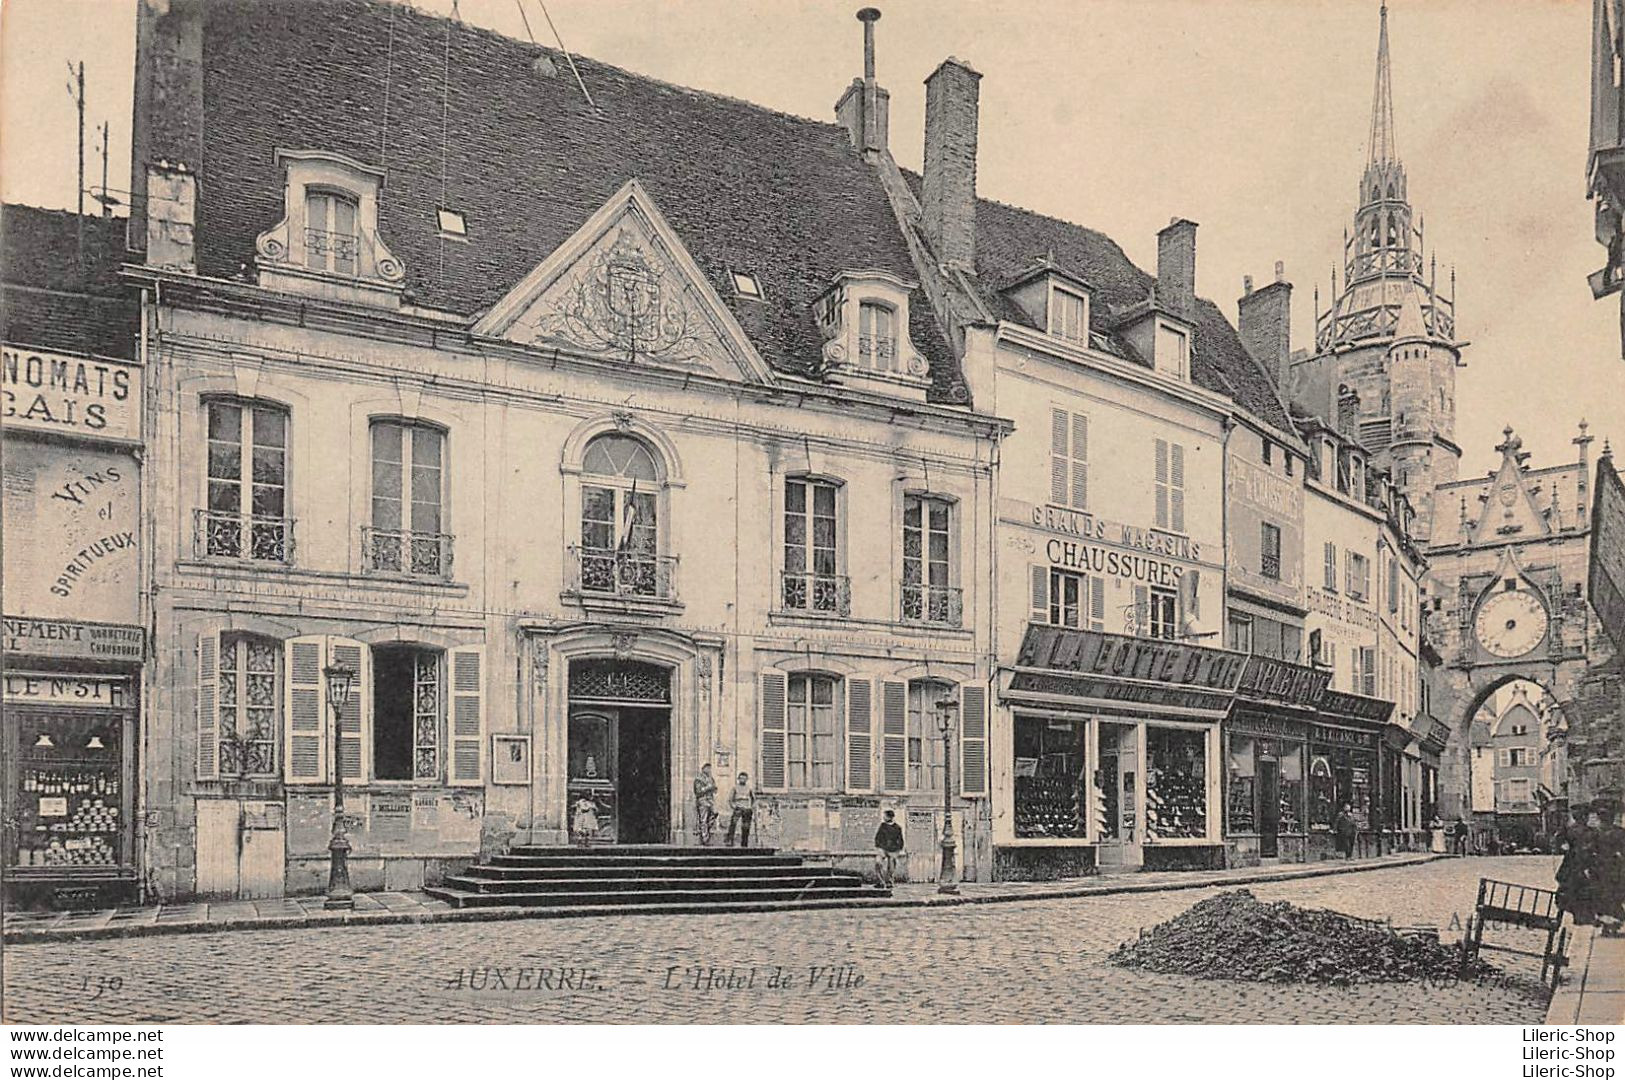 AUXERRE (89) CPA ±1930 - L'Hôtel De Ville - Magasin De Chaussures "LA BOTTE D'OR" ND, Phot. - Auxerre